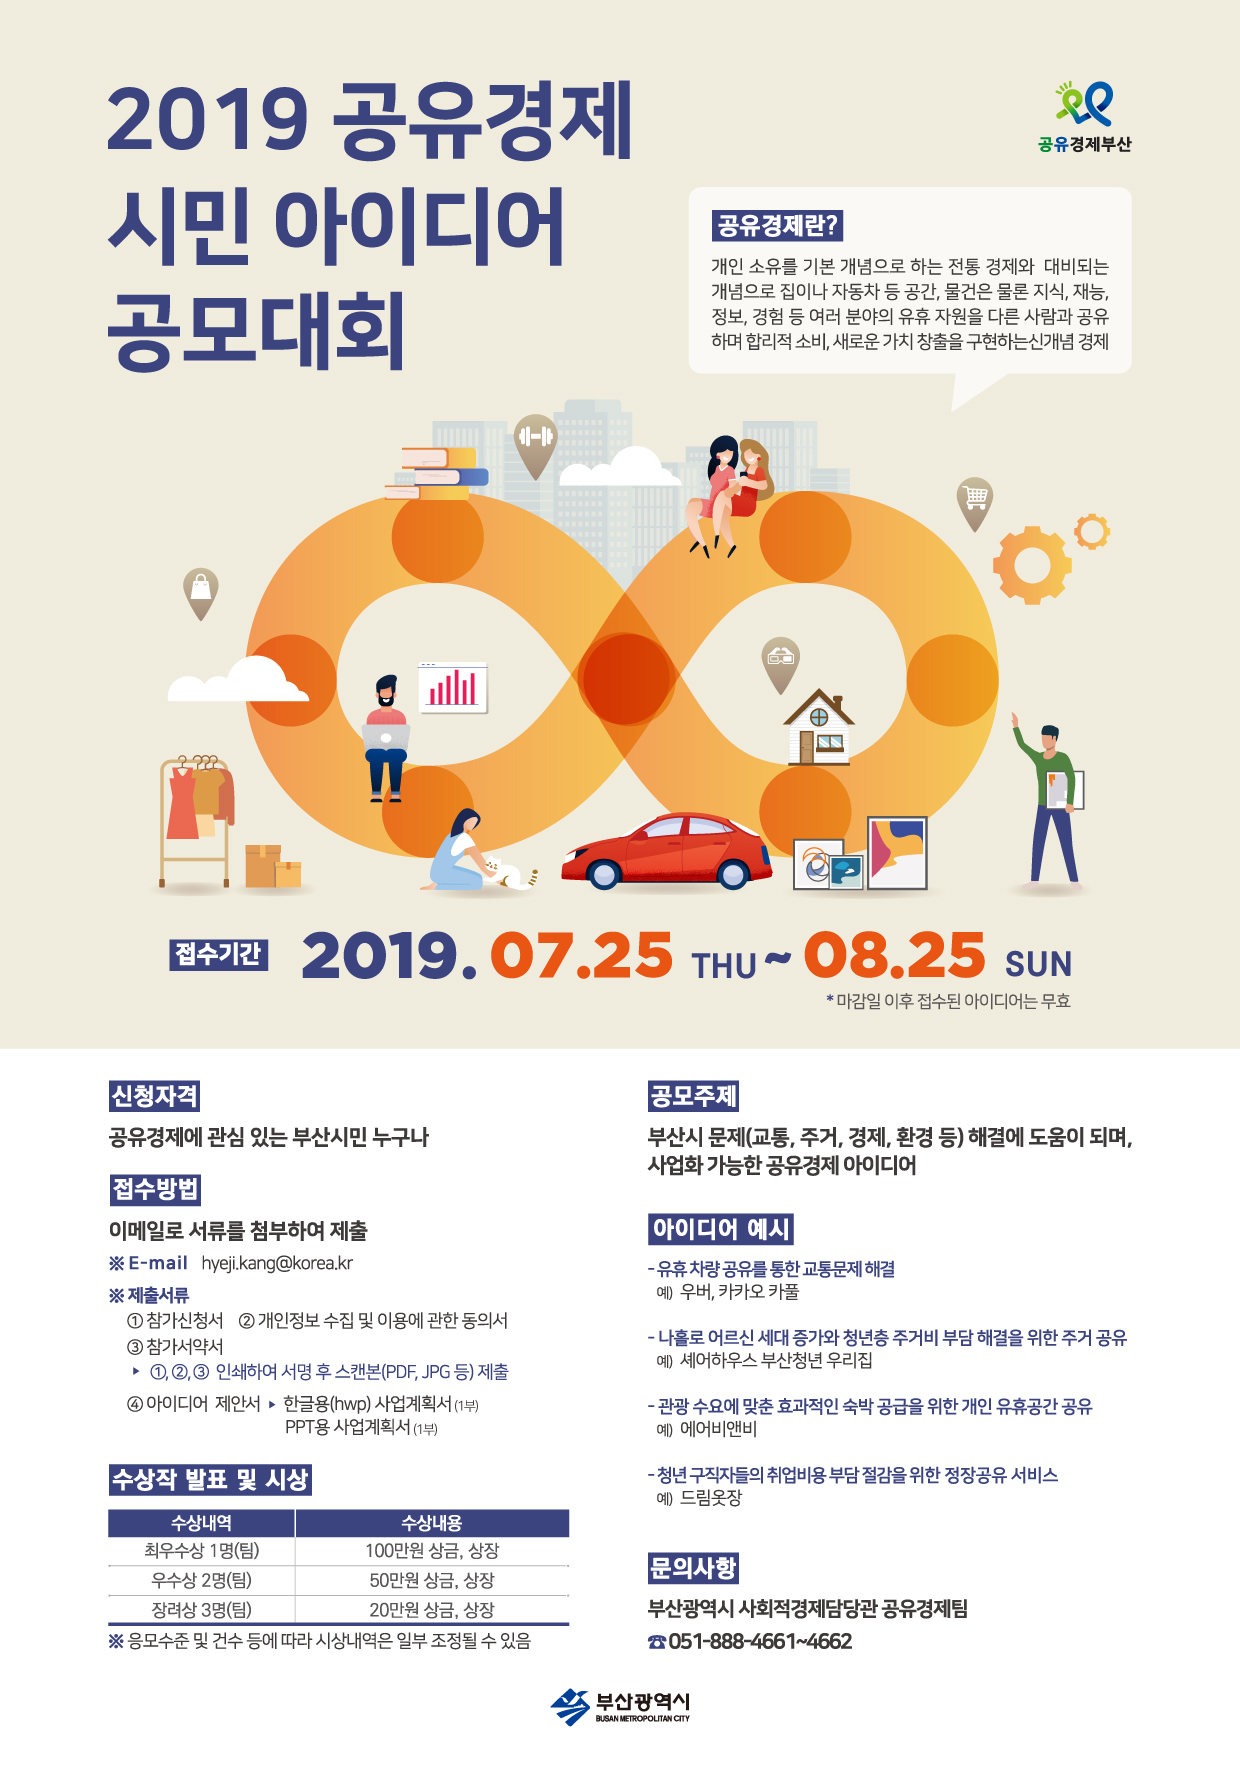 2019공유경제 시민아이디어 공모대회 개최0